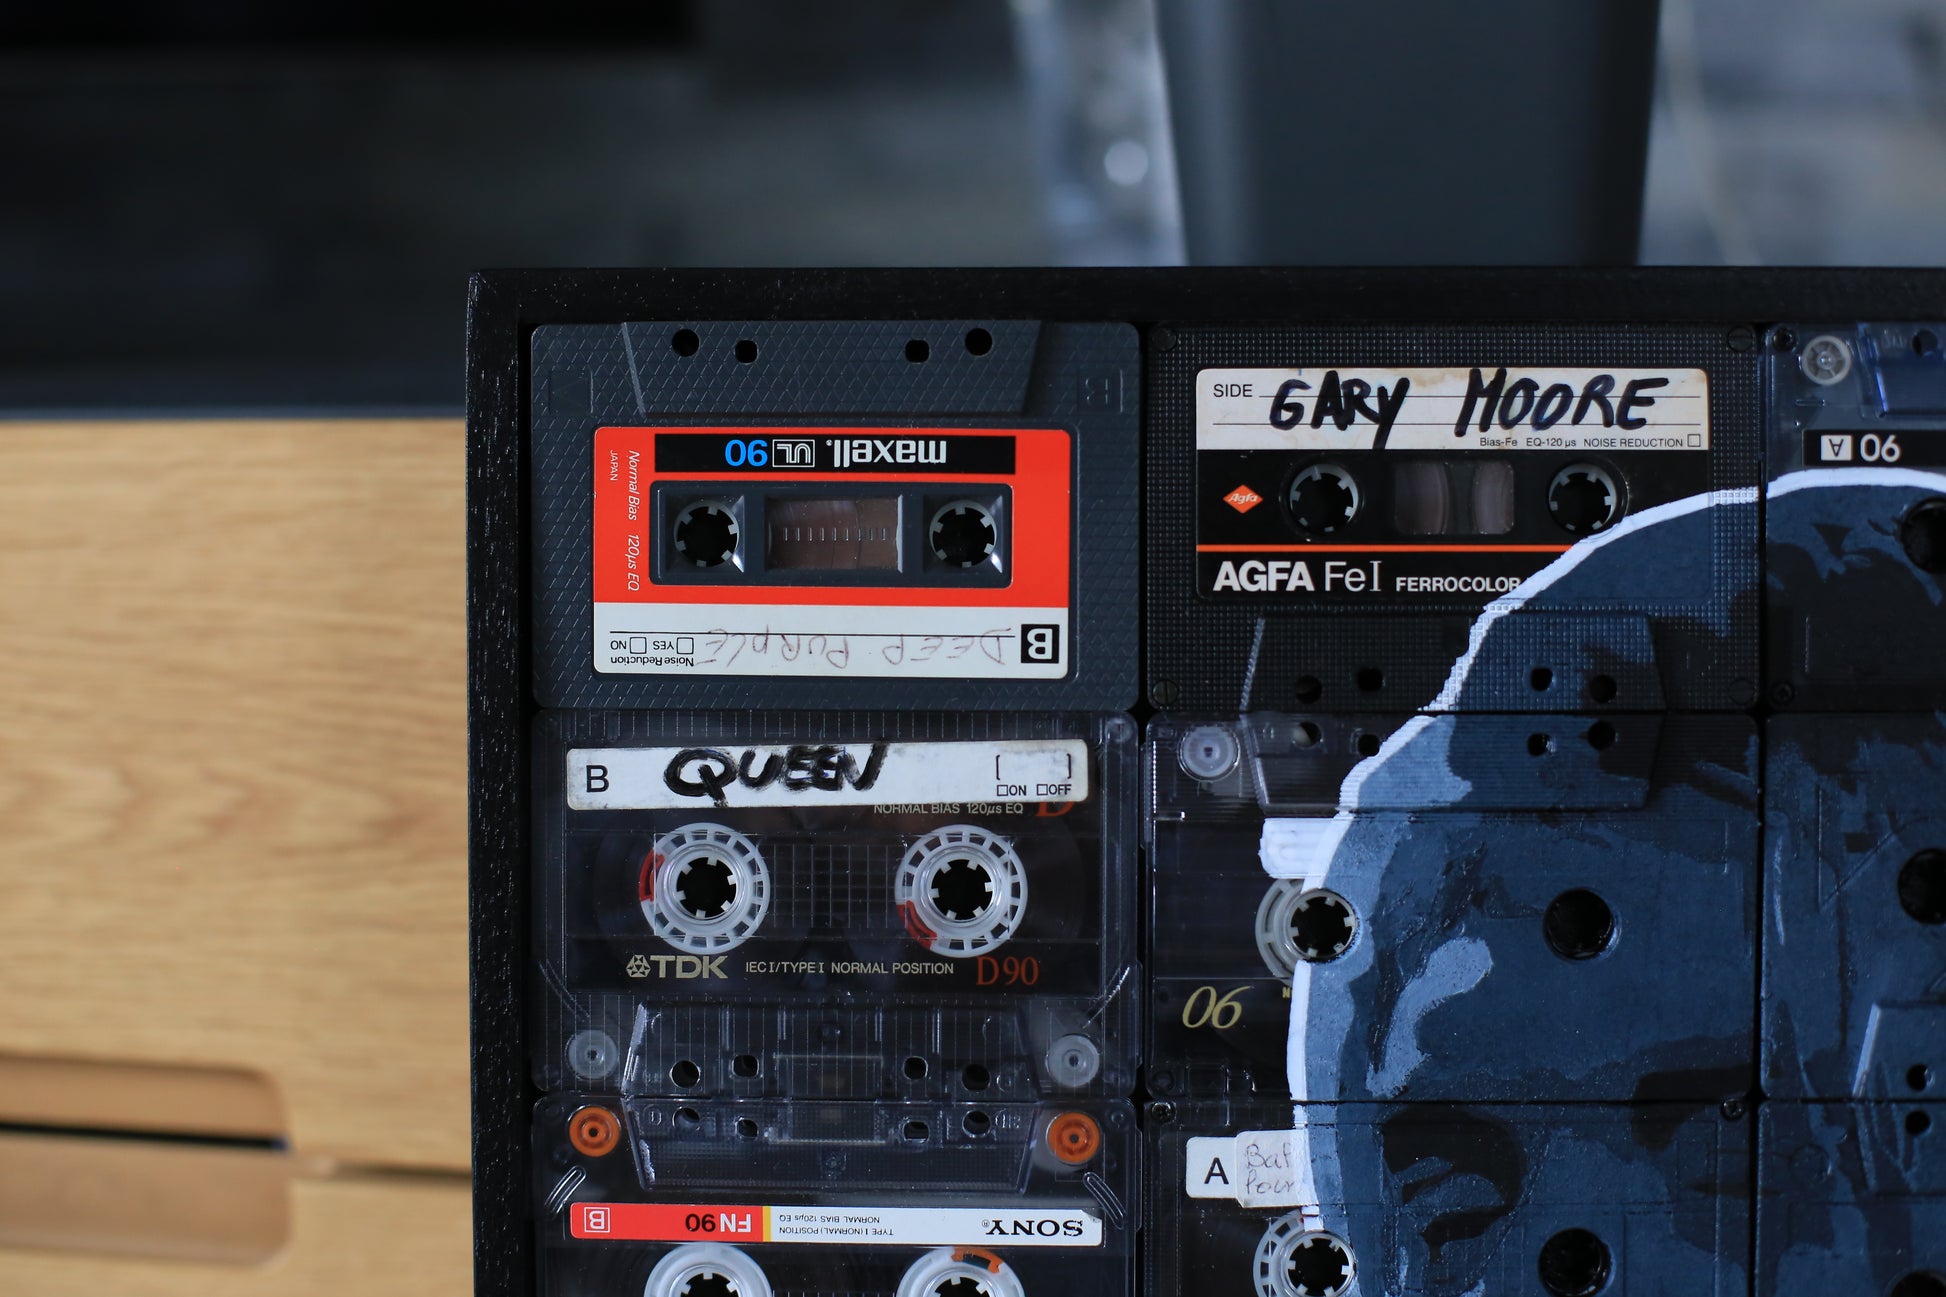 portrait de kurt cobain peint sur cassette audio